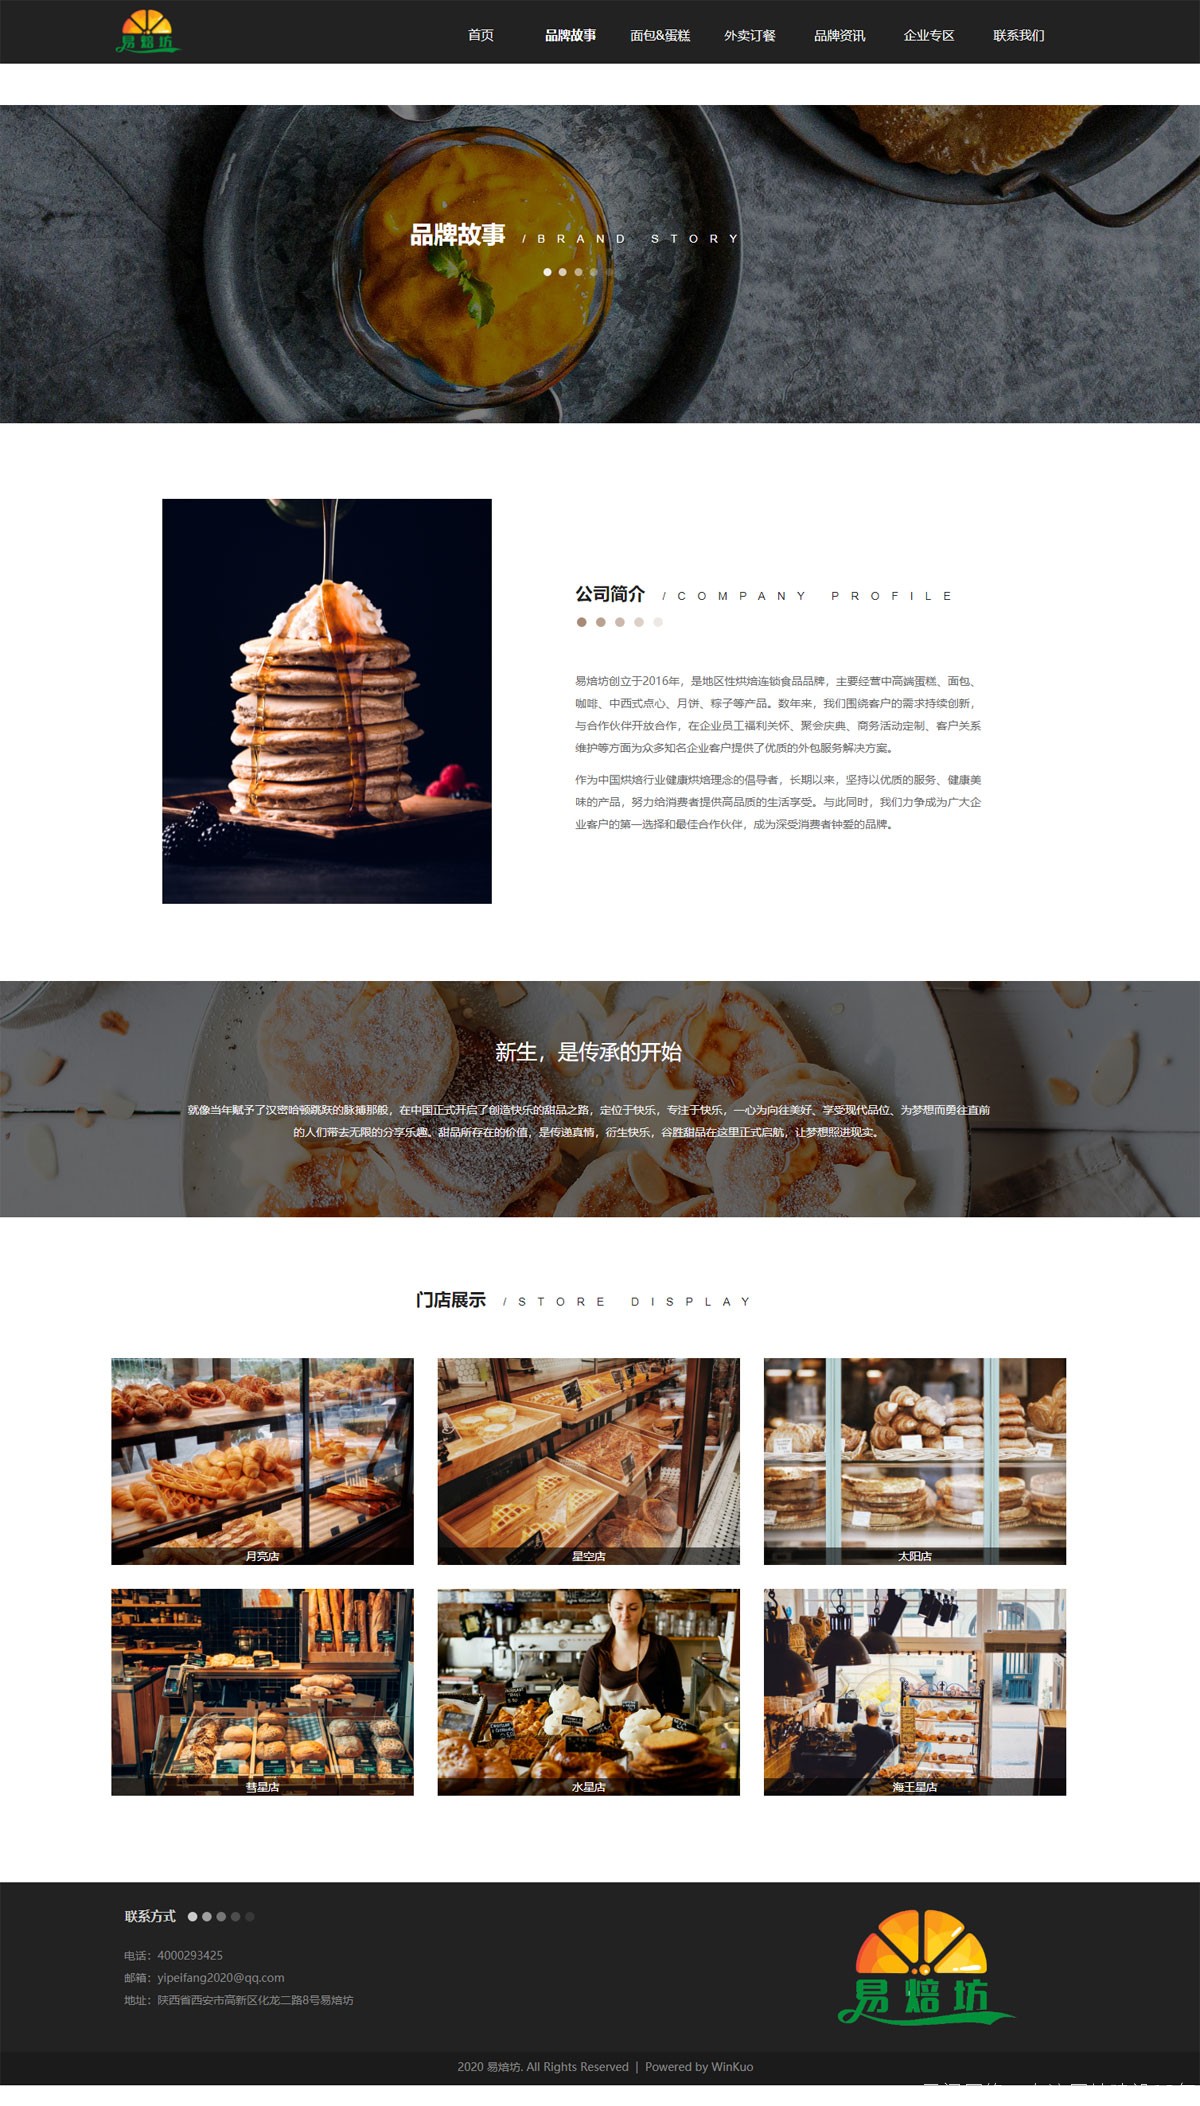 蛋糕烘焙面包店网站设计效果图